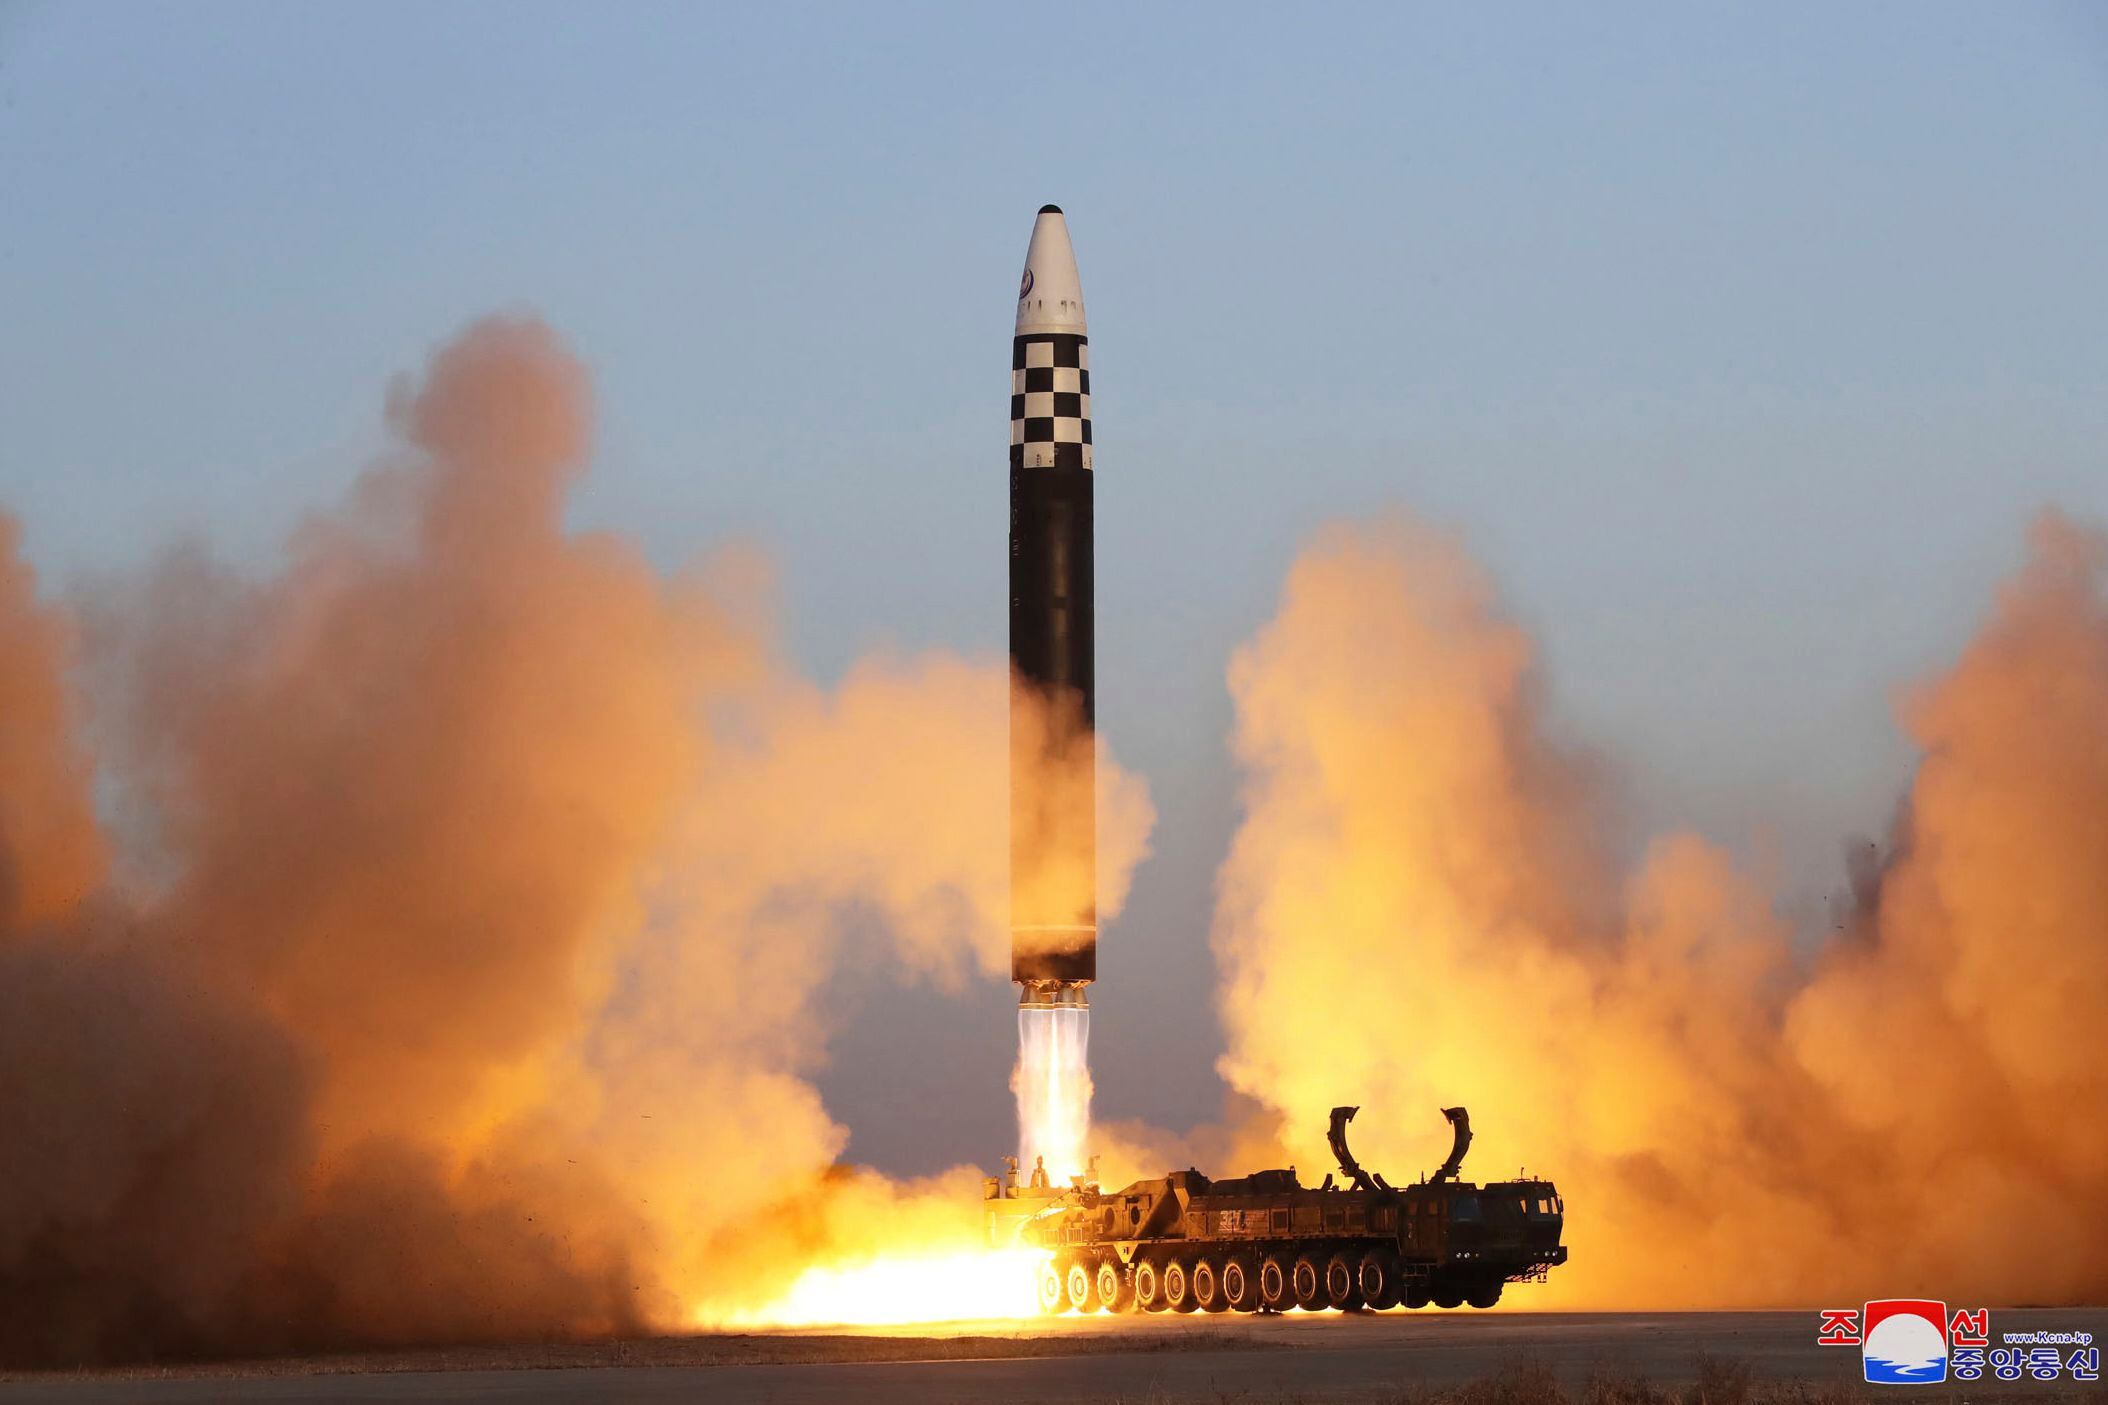 Esta imagen difundida por el régimen de Corea del Norte muestra lo que asegura se trata de un misil balístico intercontinental durante un lanzamiento de prueba desde el aeropuerto internacional Sunan, el jueves 16 de marzo de 2023, en Pyongyang, Corea del Norte. (Agencia Central de Noticias de Corea/Korea News Service vía AP/Archivo)